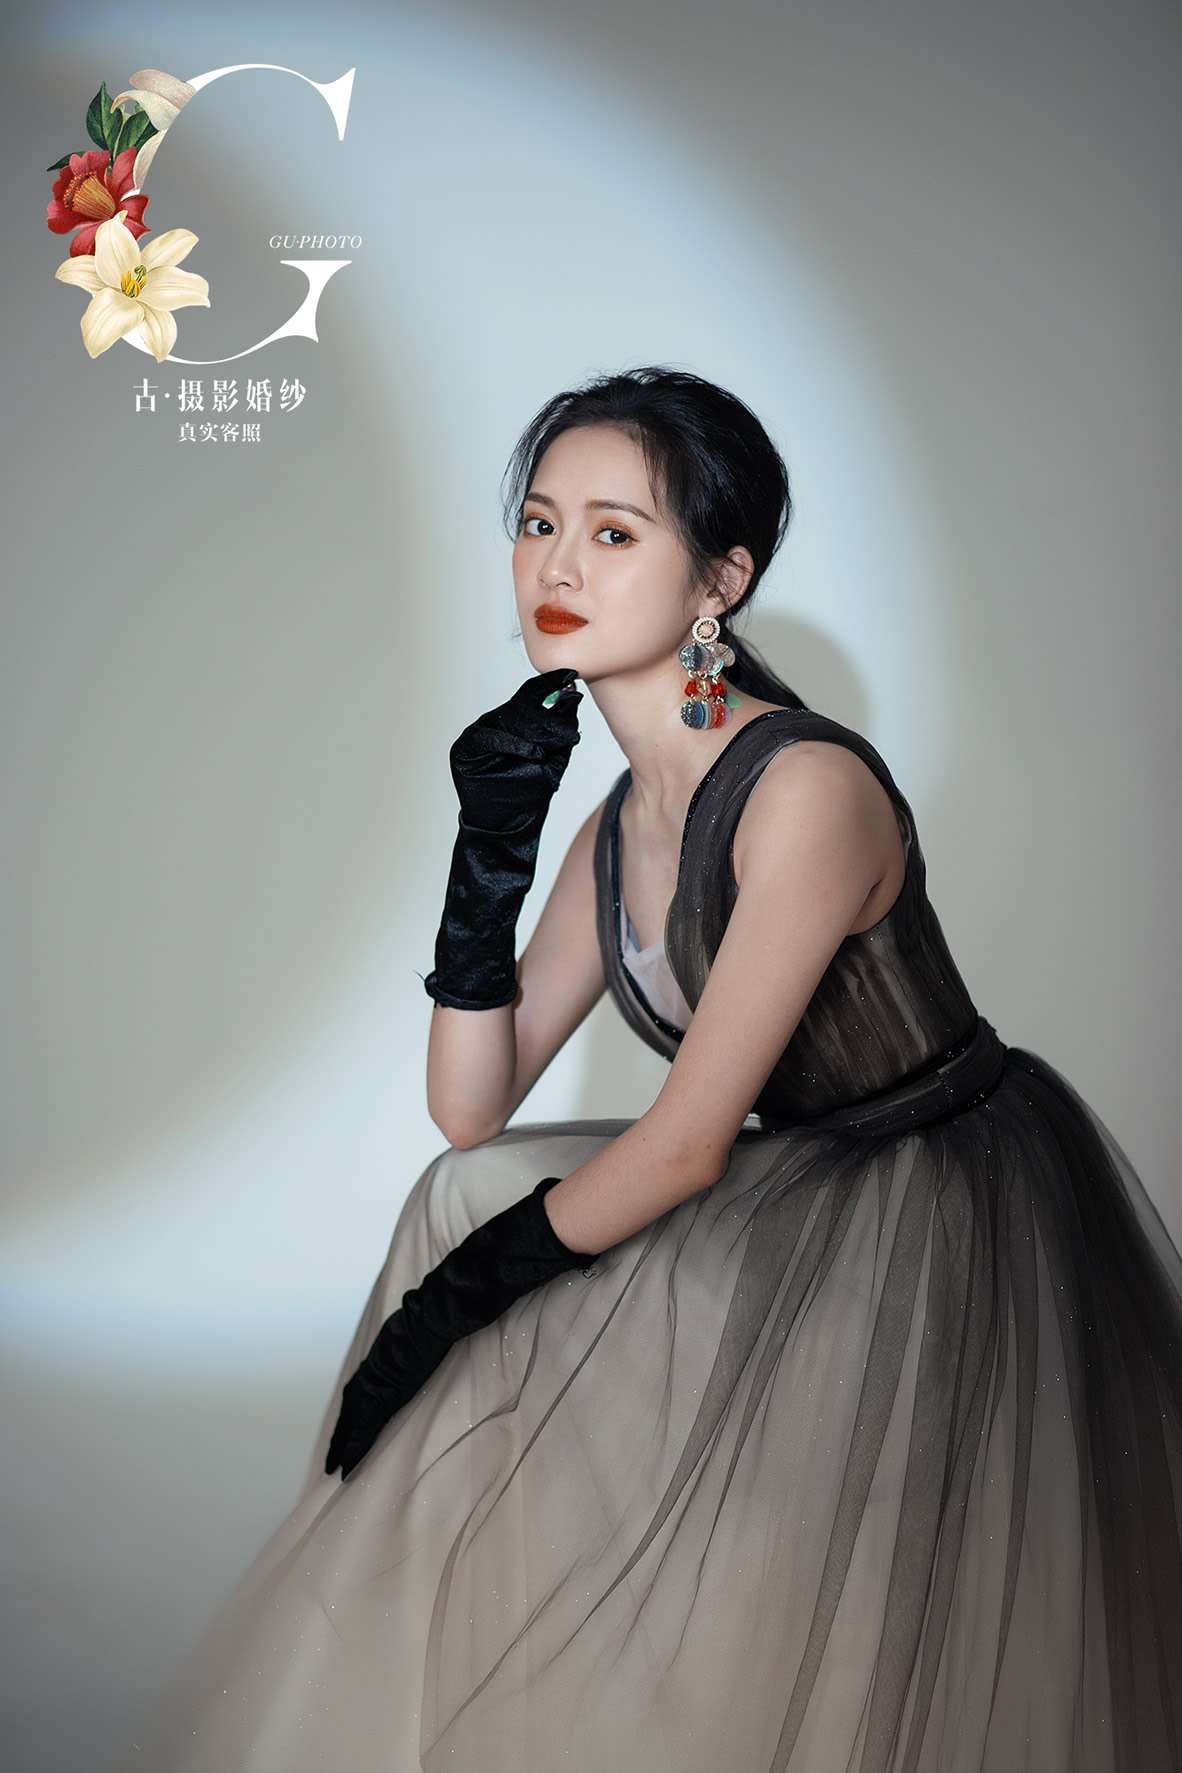 蒙先生 潘小姐 - 每日客照 - 广州婚纱摄影-广州古摄影官网